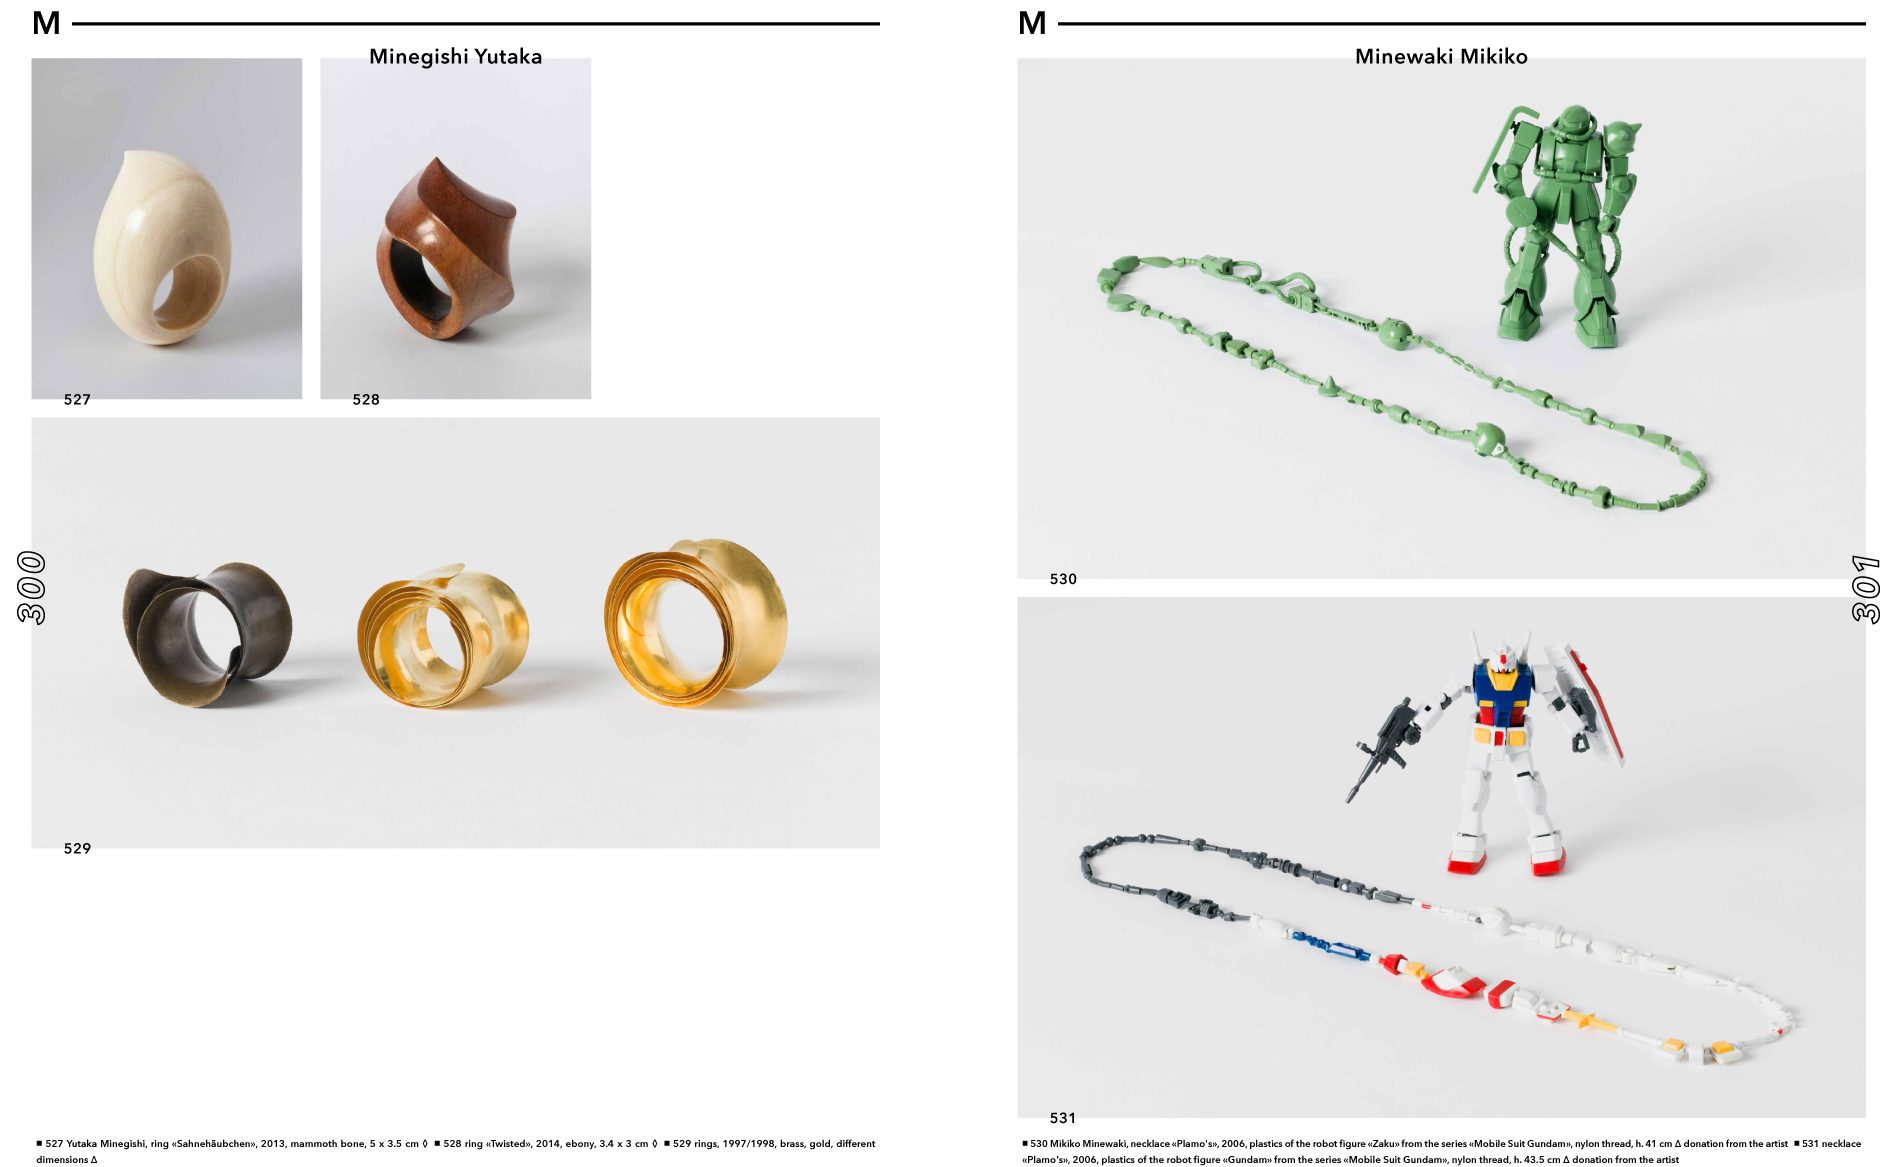 Links 3 Abbildungen mit Ringen von Yutaka Minegishi. Rechts 2 Abb. mit Schmuckobjekten von Mikiko Minewaki.